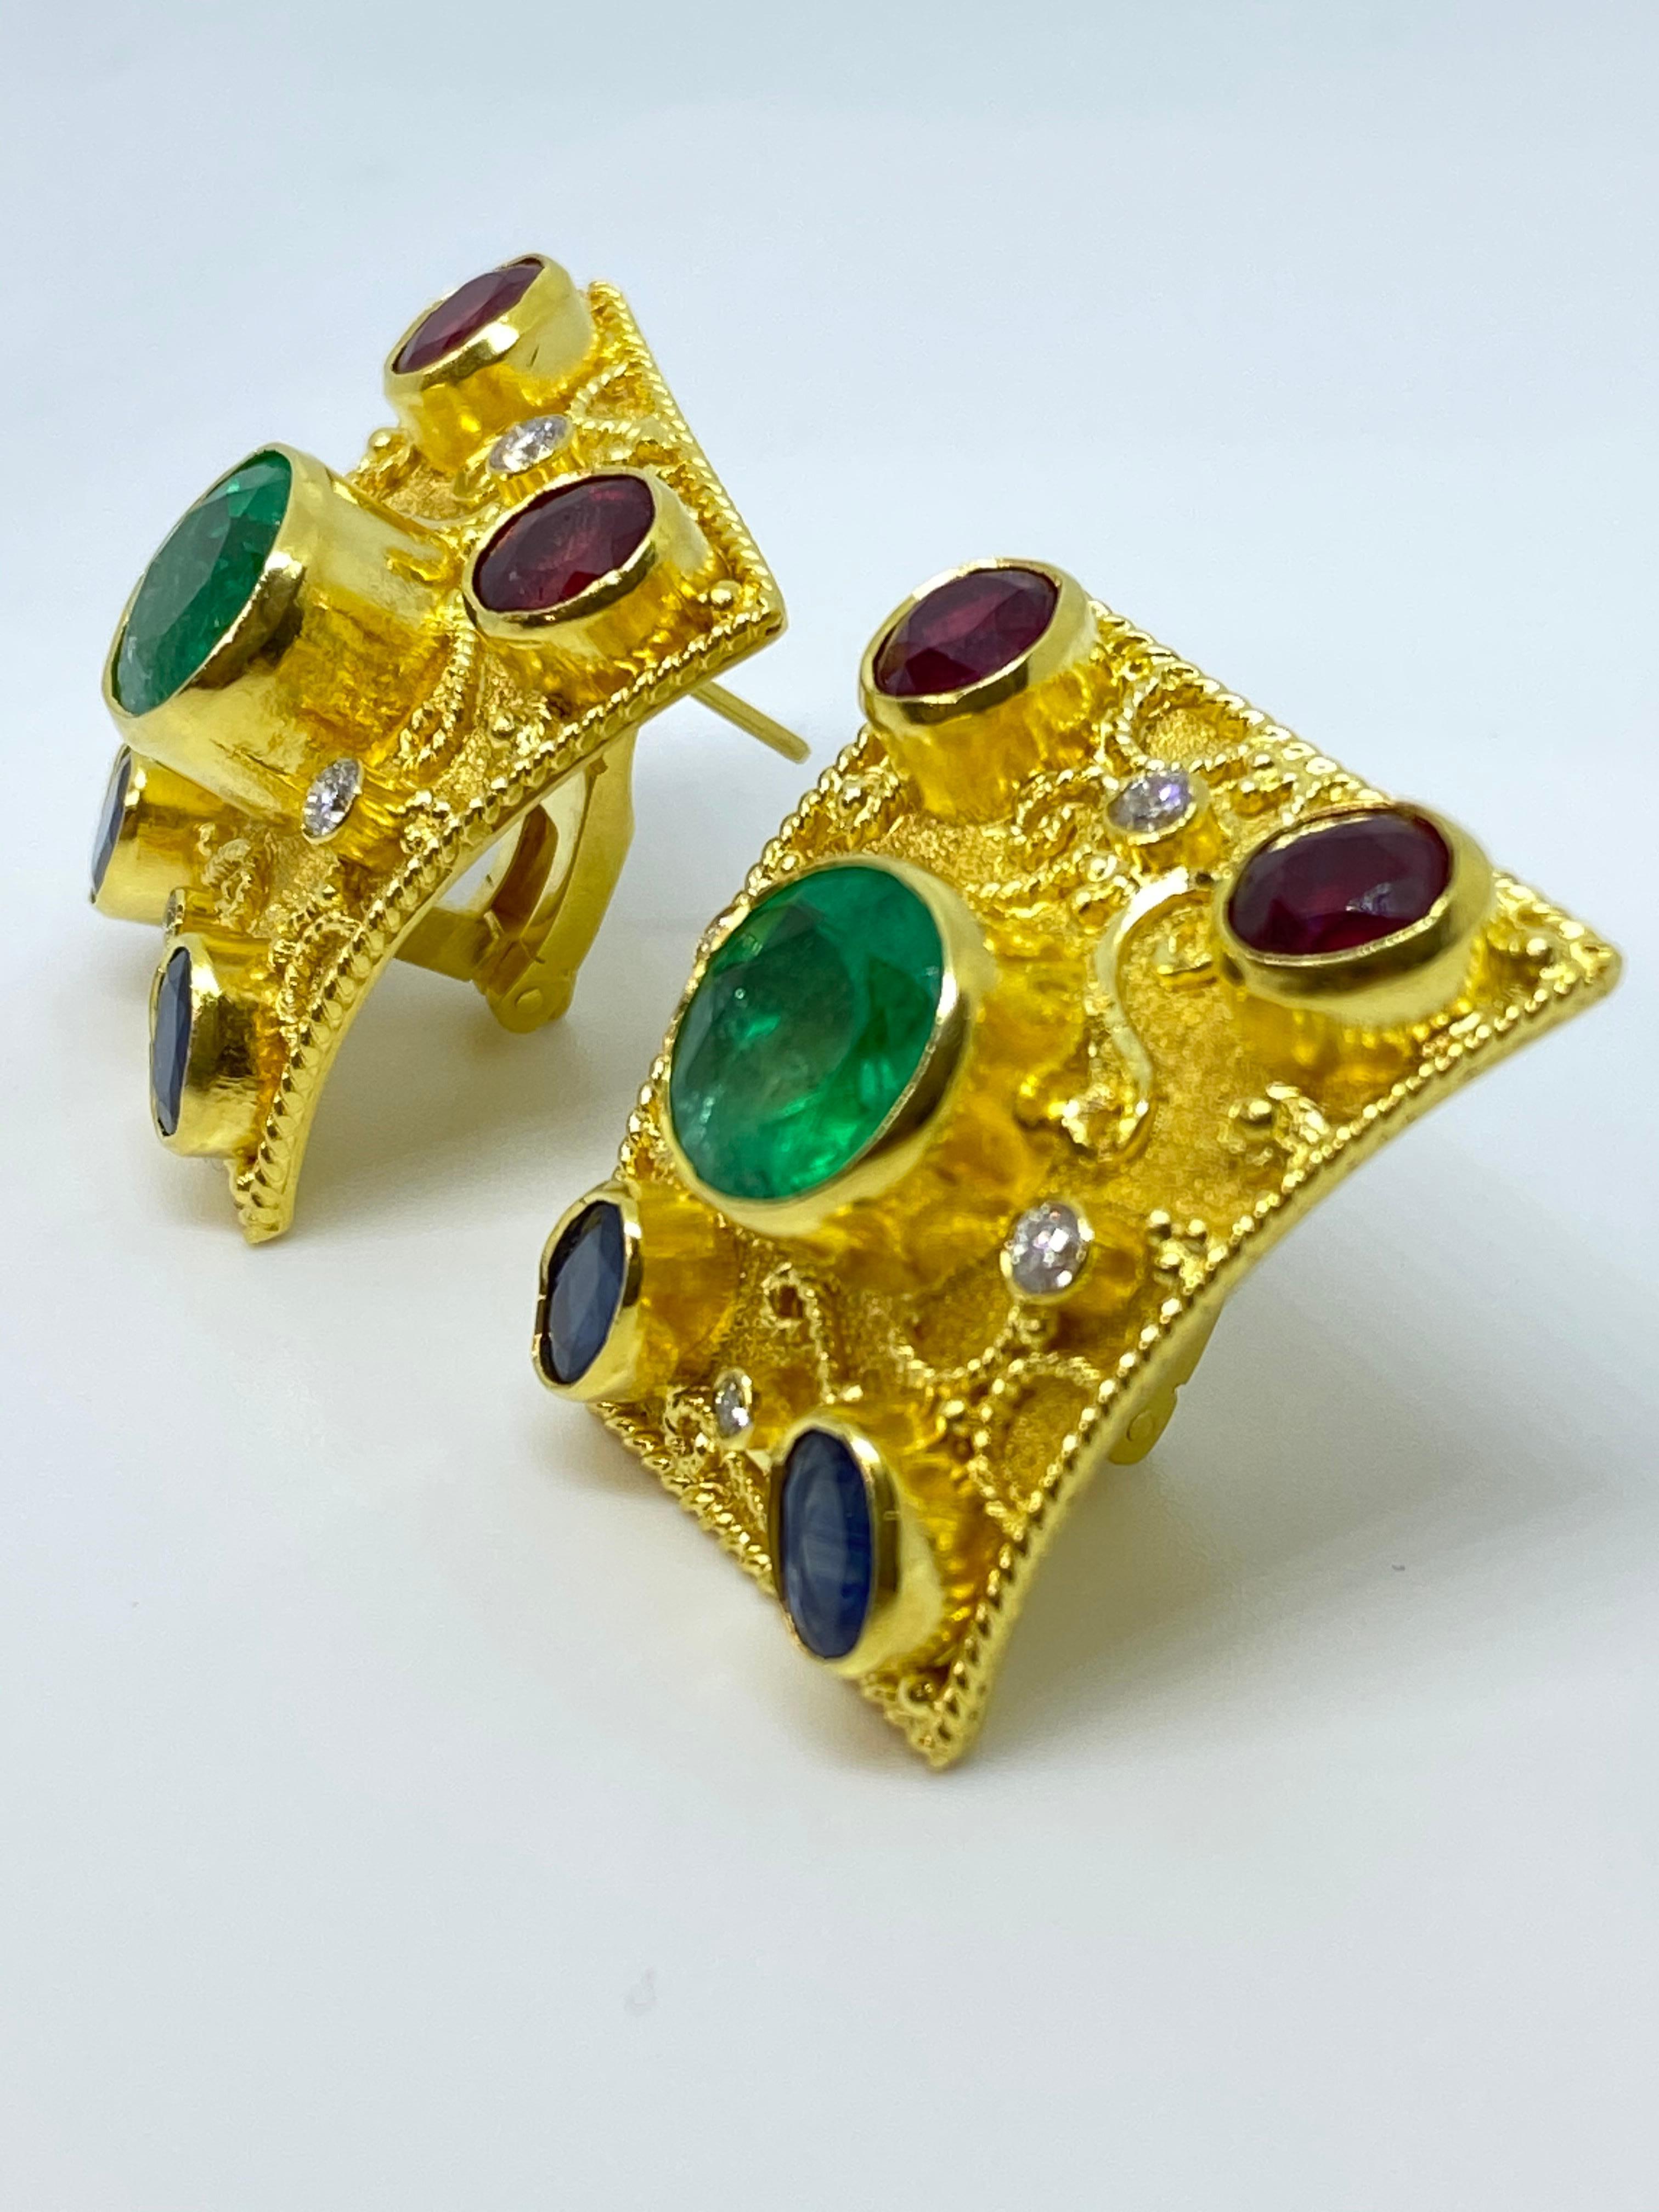 Dieses einzigartige Paar Ohrringe des Designers S. Georgios ist aus 18-karätigem Gelbgold handgefertigt und mit einer Granulation im byzantinischen Stil verziert, die Stück für Stück mikroskopisch bearbeitet wird. Diese schönen geschwungenen